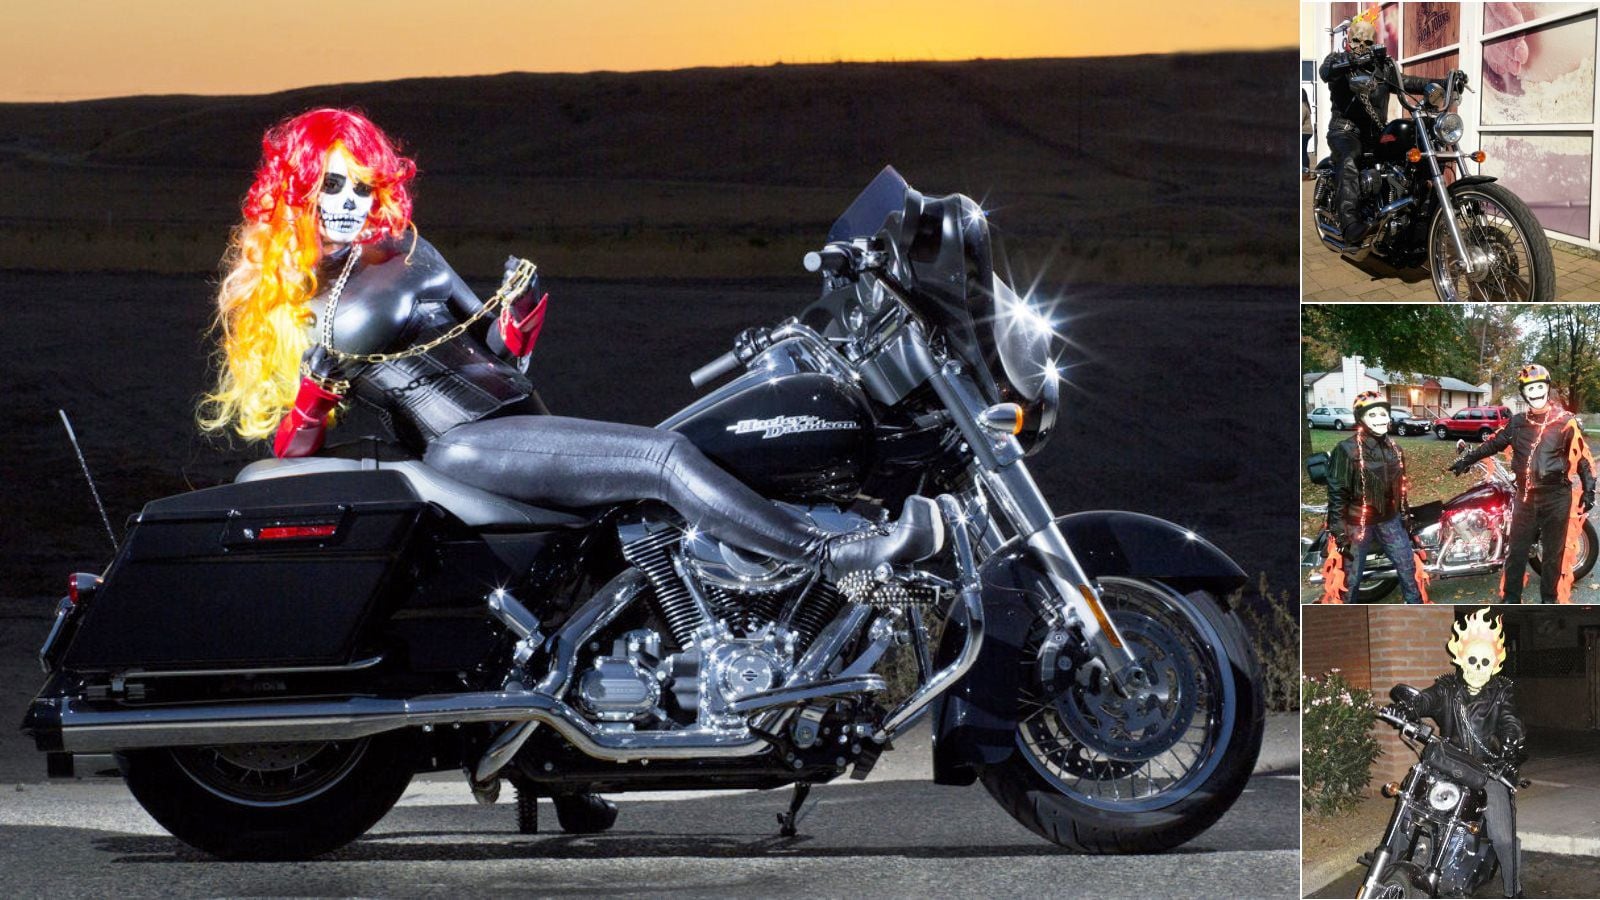 Top 9 Motorcycle Halloween Costumes | Hdforums